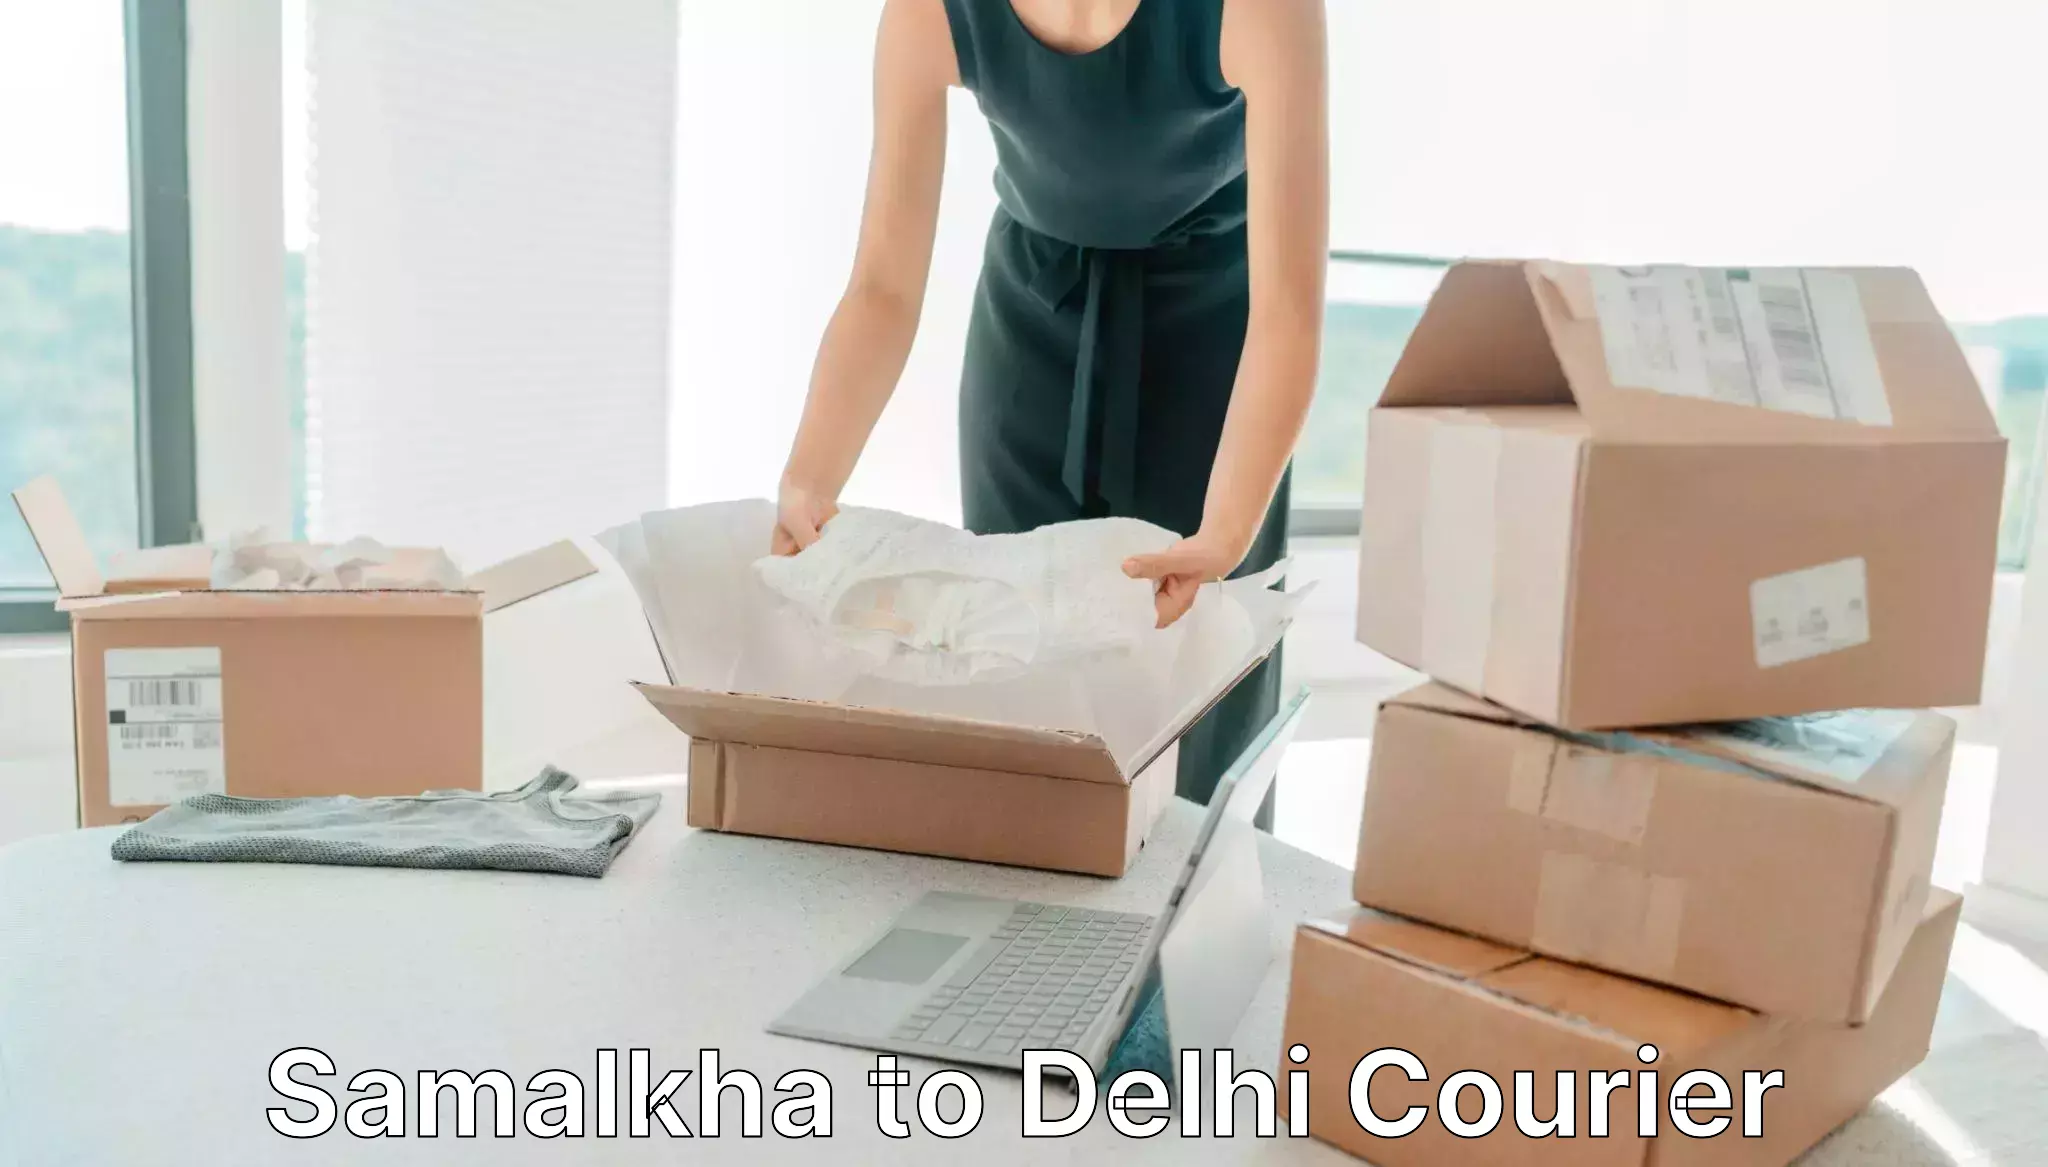 Delivery service partnership Samalkha to Delhi